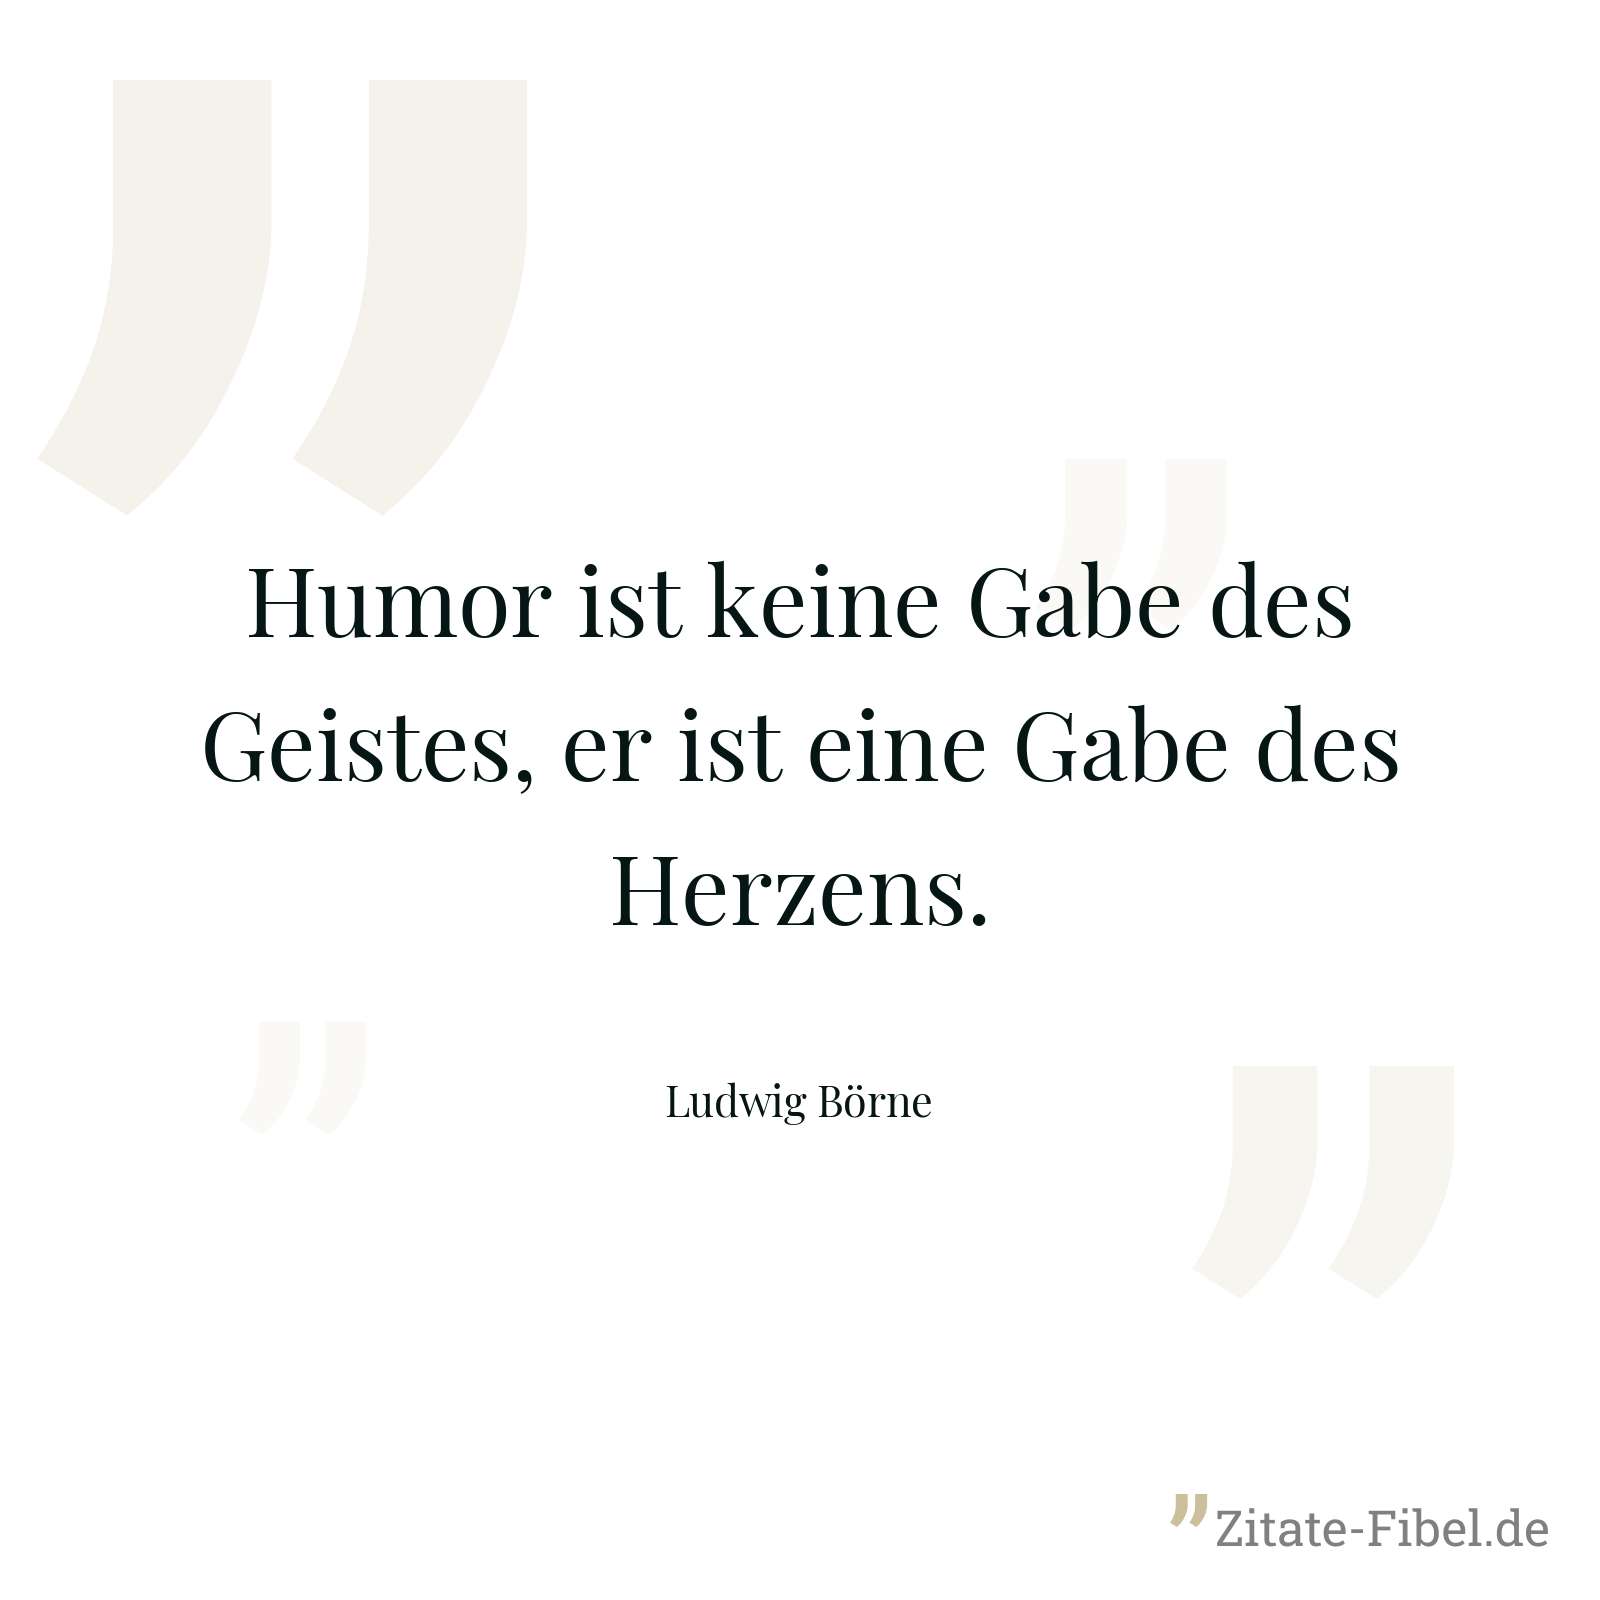 Humor ist keine Gabe des Geistes, er ist eine Gabe des Herzens. - Ludwig Börne